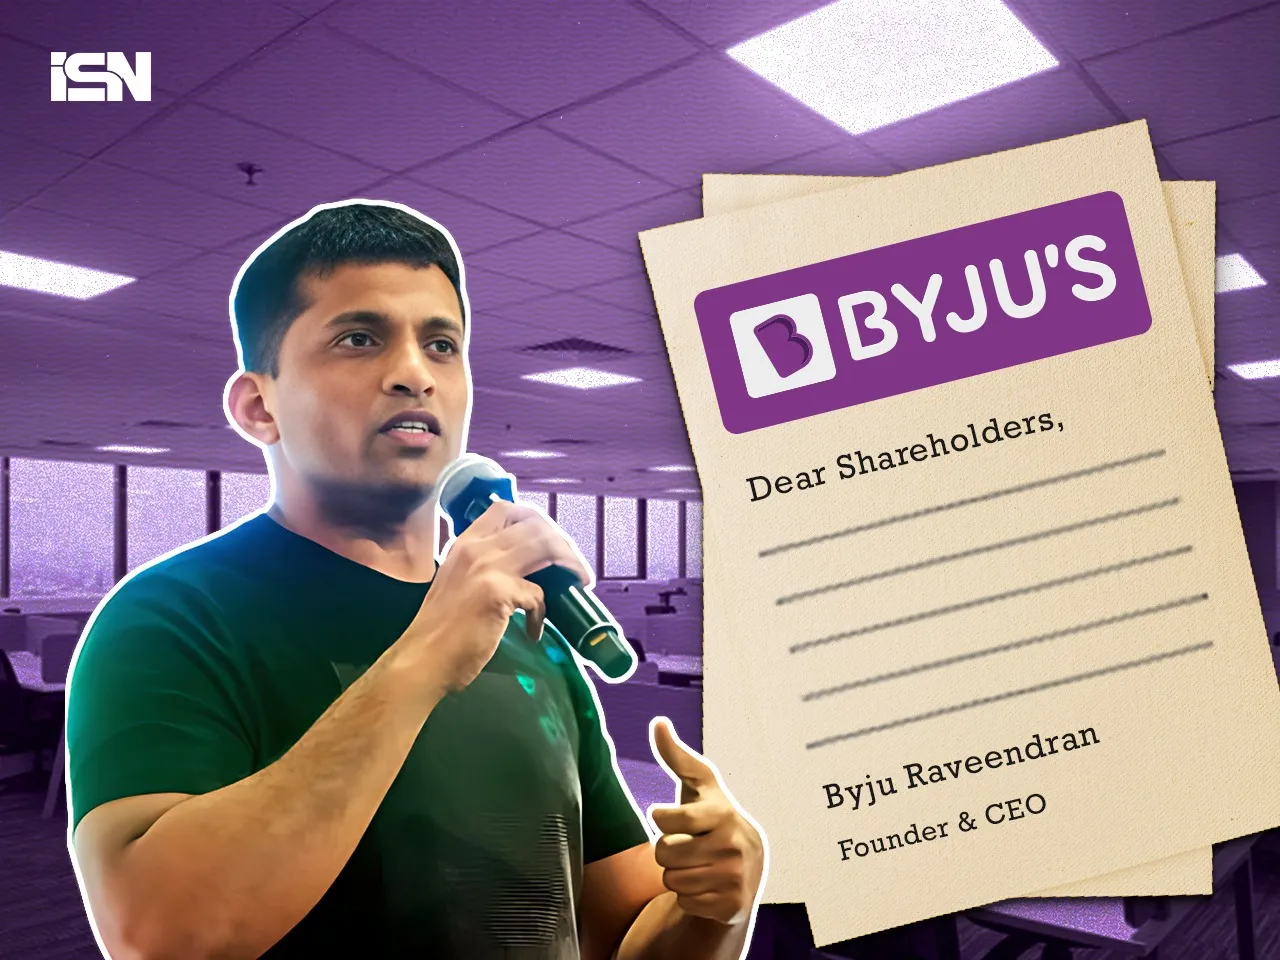 byjus shareholders letter 